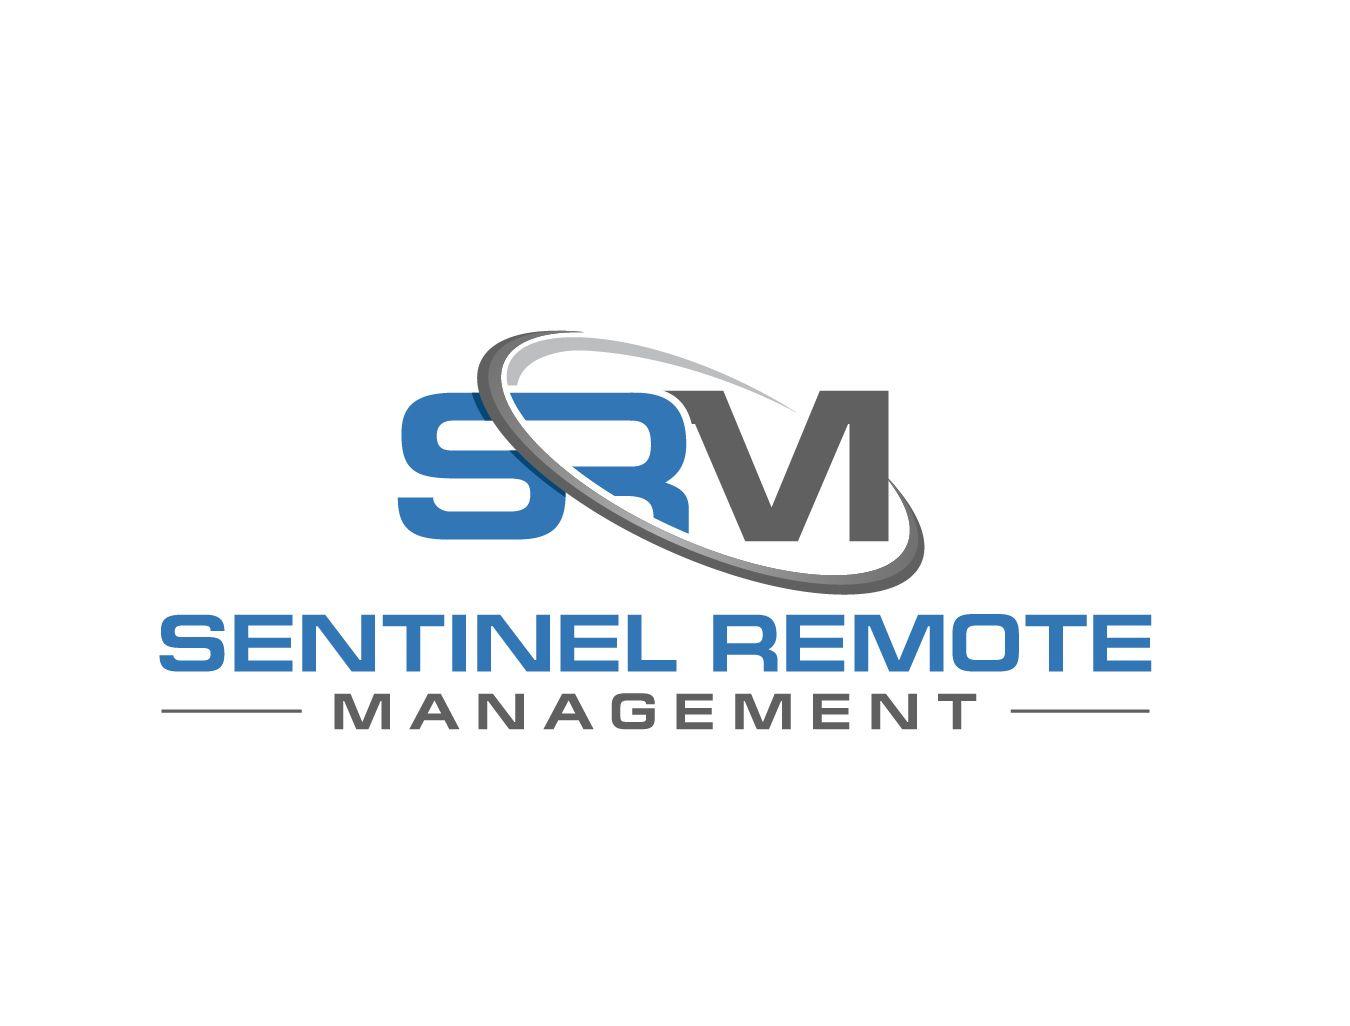 SRM Logo - Bold, Professional, Information Technology Logo Design for Sentinel